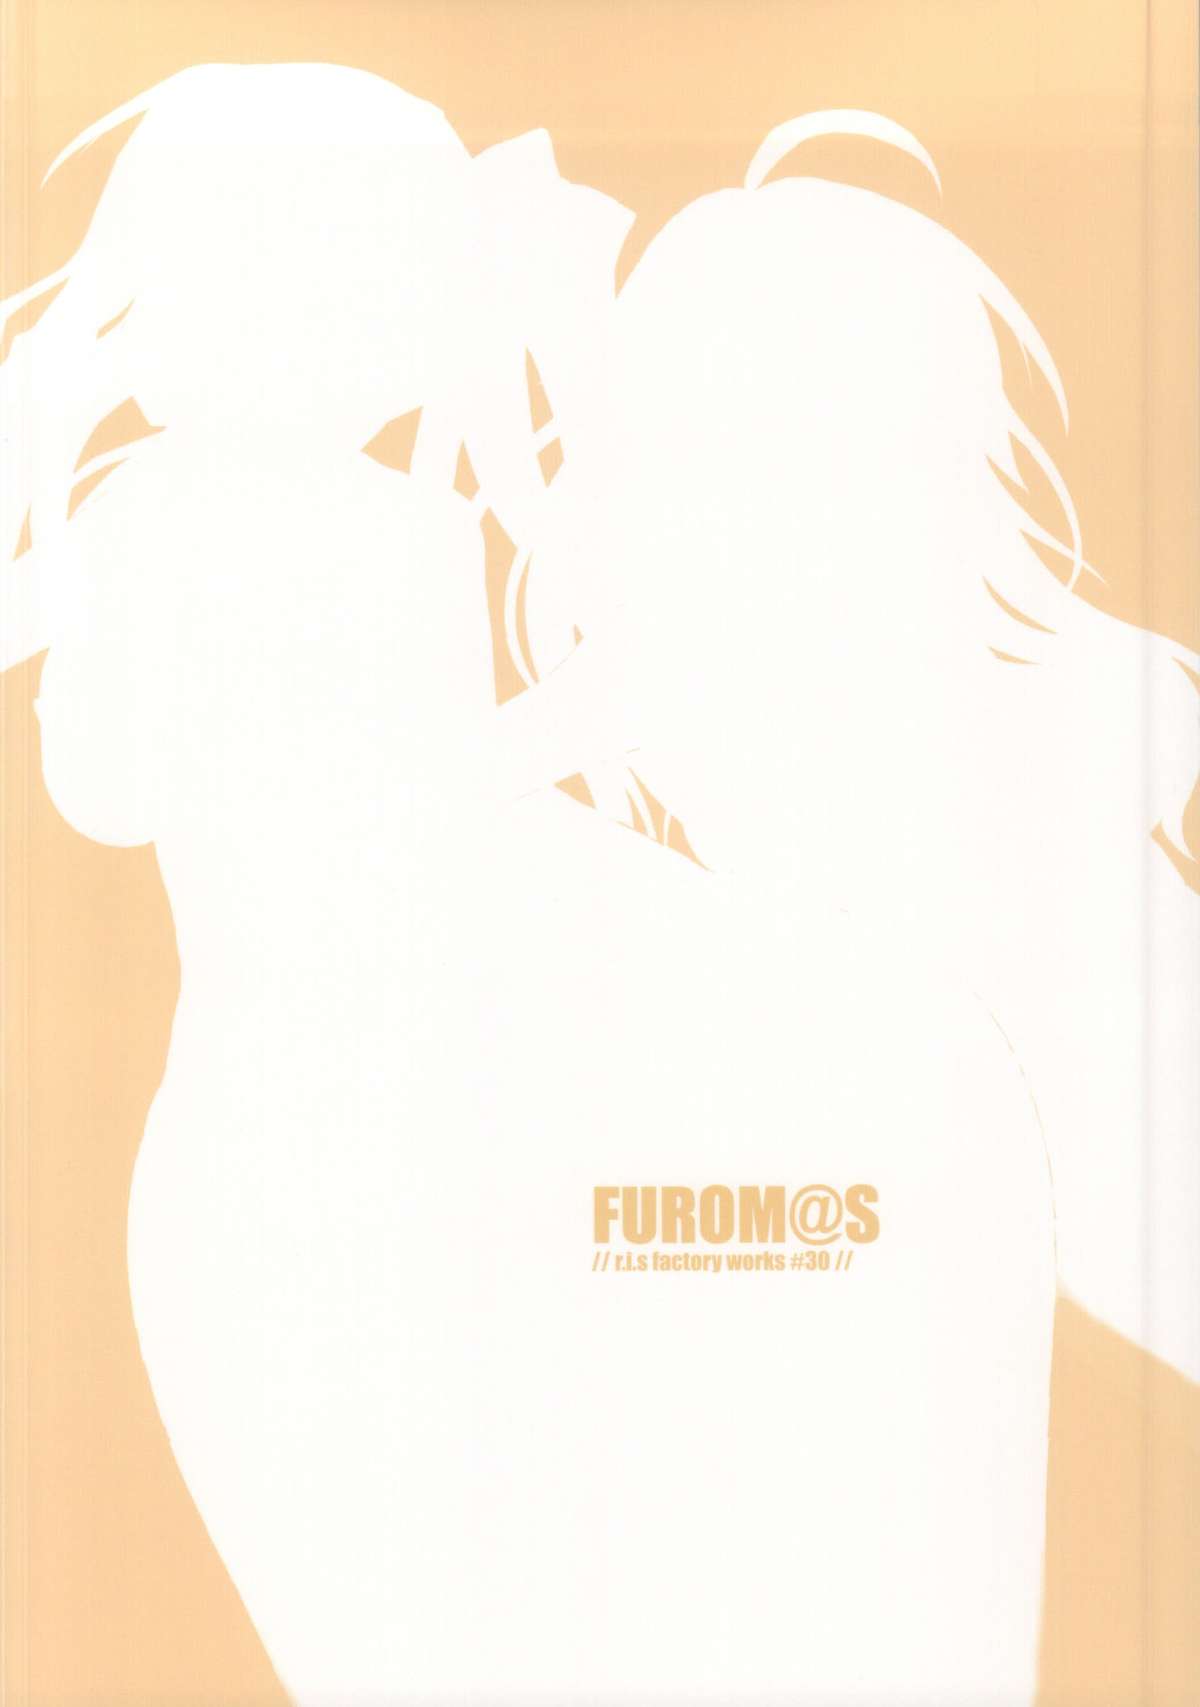 (COMIC1☆9) [r.i.s factory (るしゅーと)] FUROM@S (アイドルマスター)